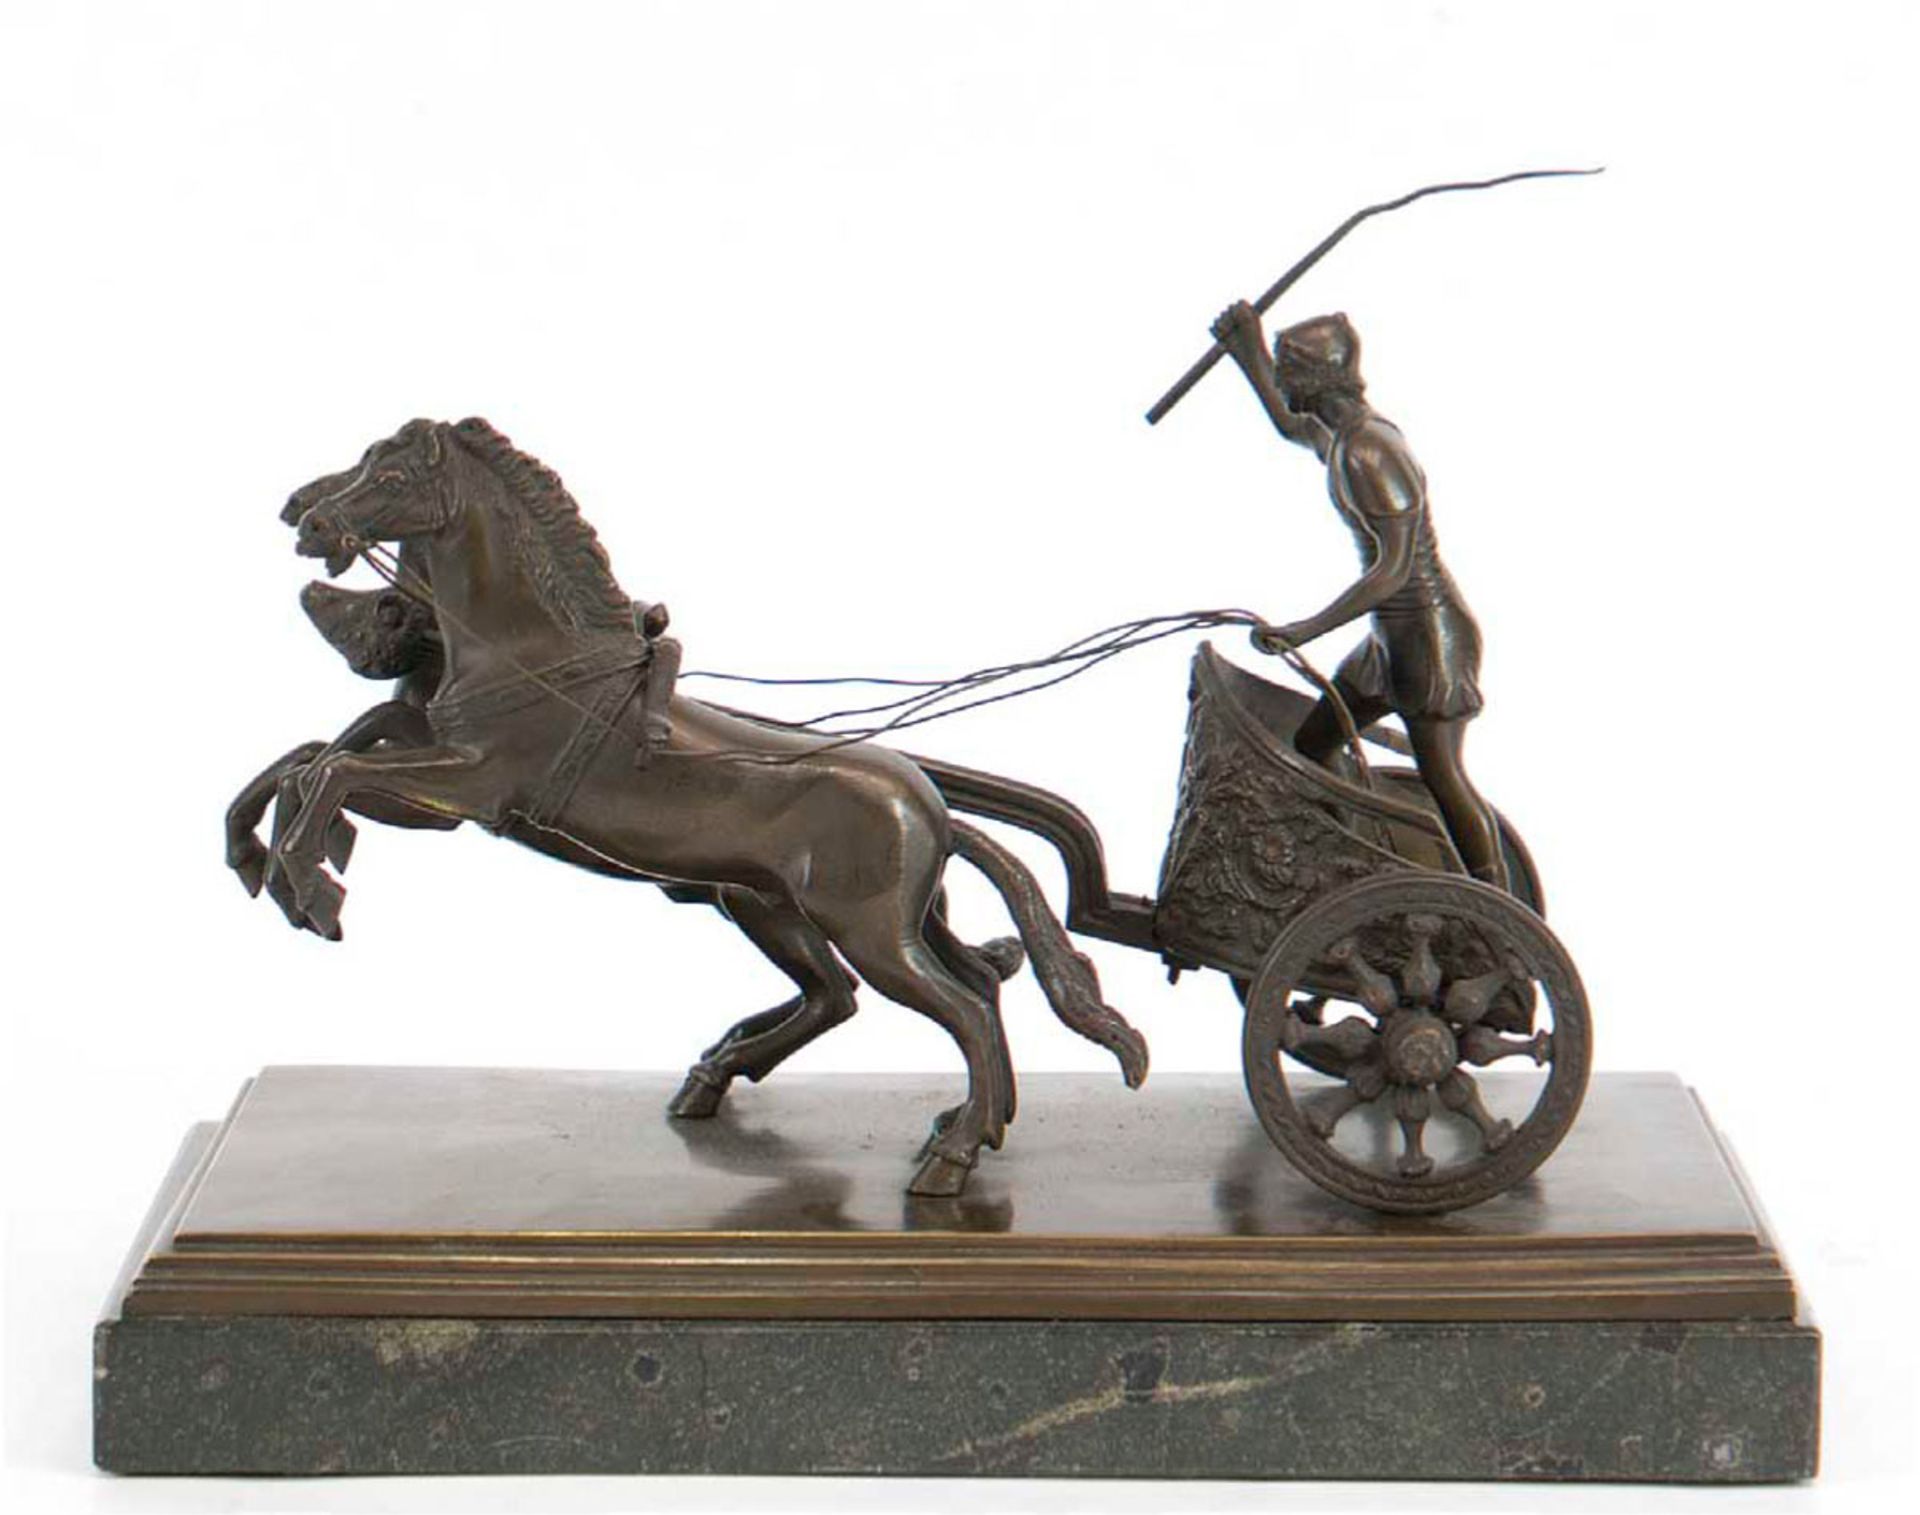 Bronzeskulptur "Römer im Streitwagen", nach antikem Vorbild, braun patiniert, auf Marmorsockel, 18x